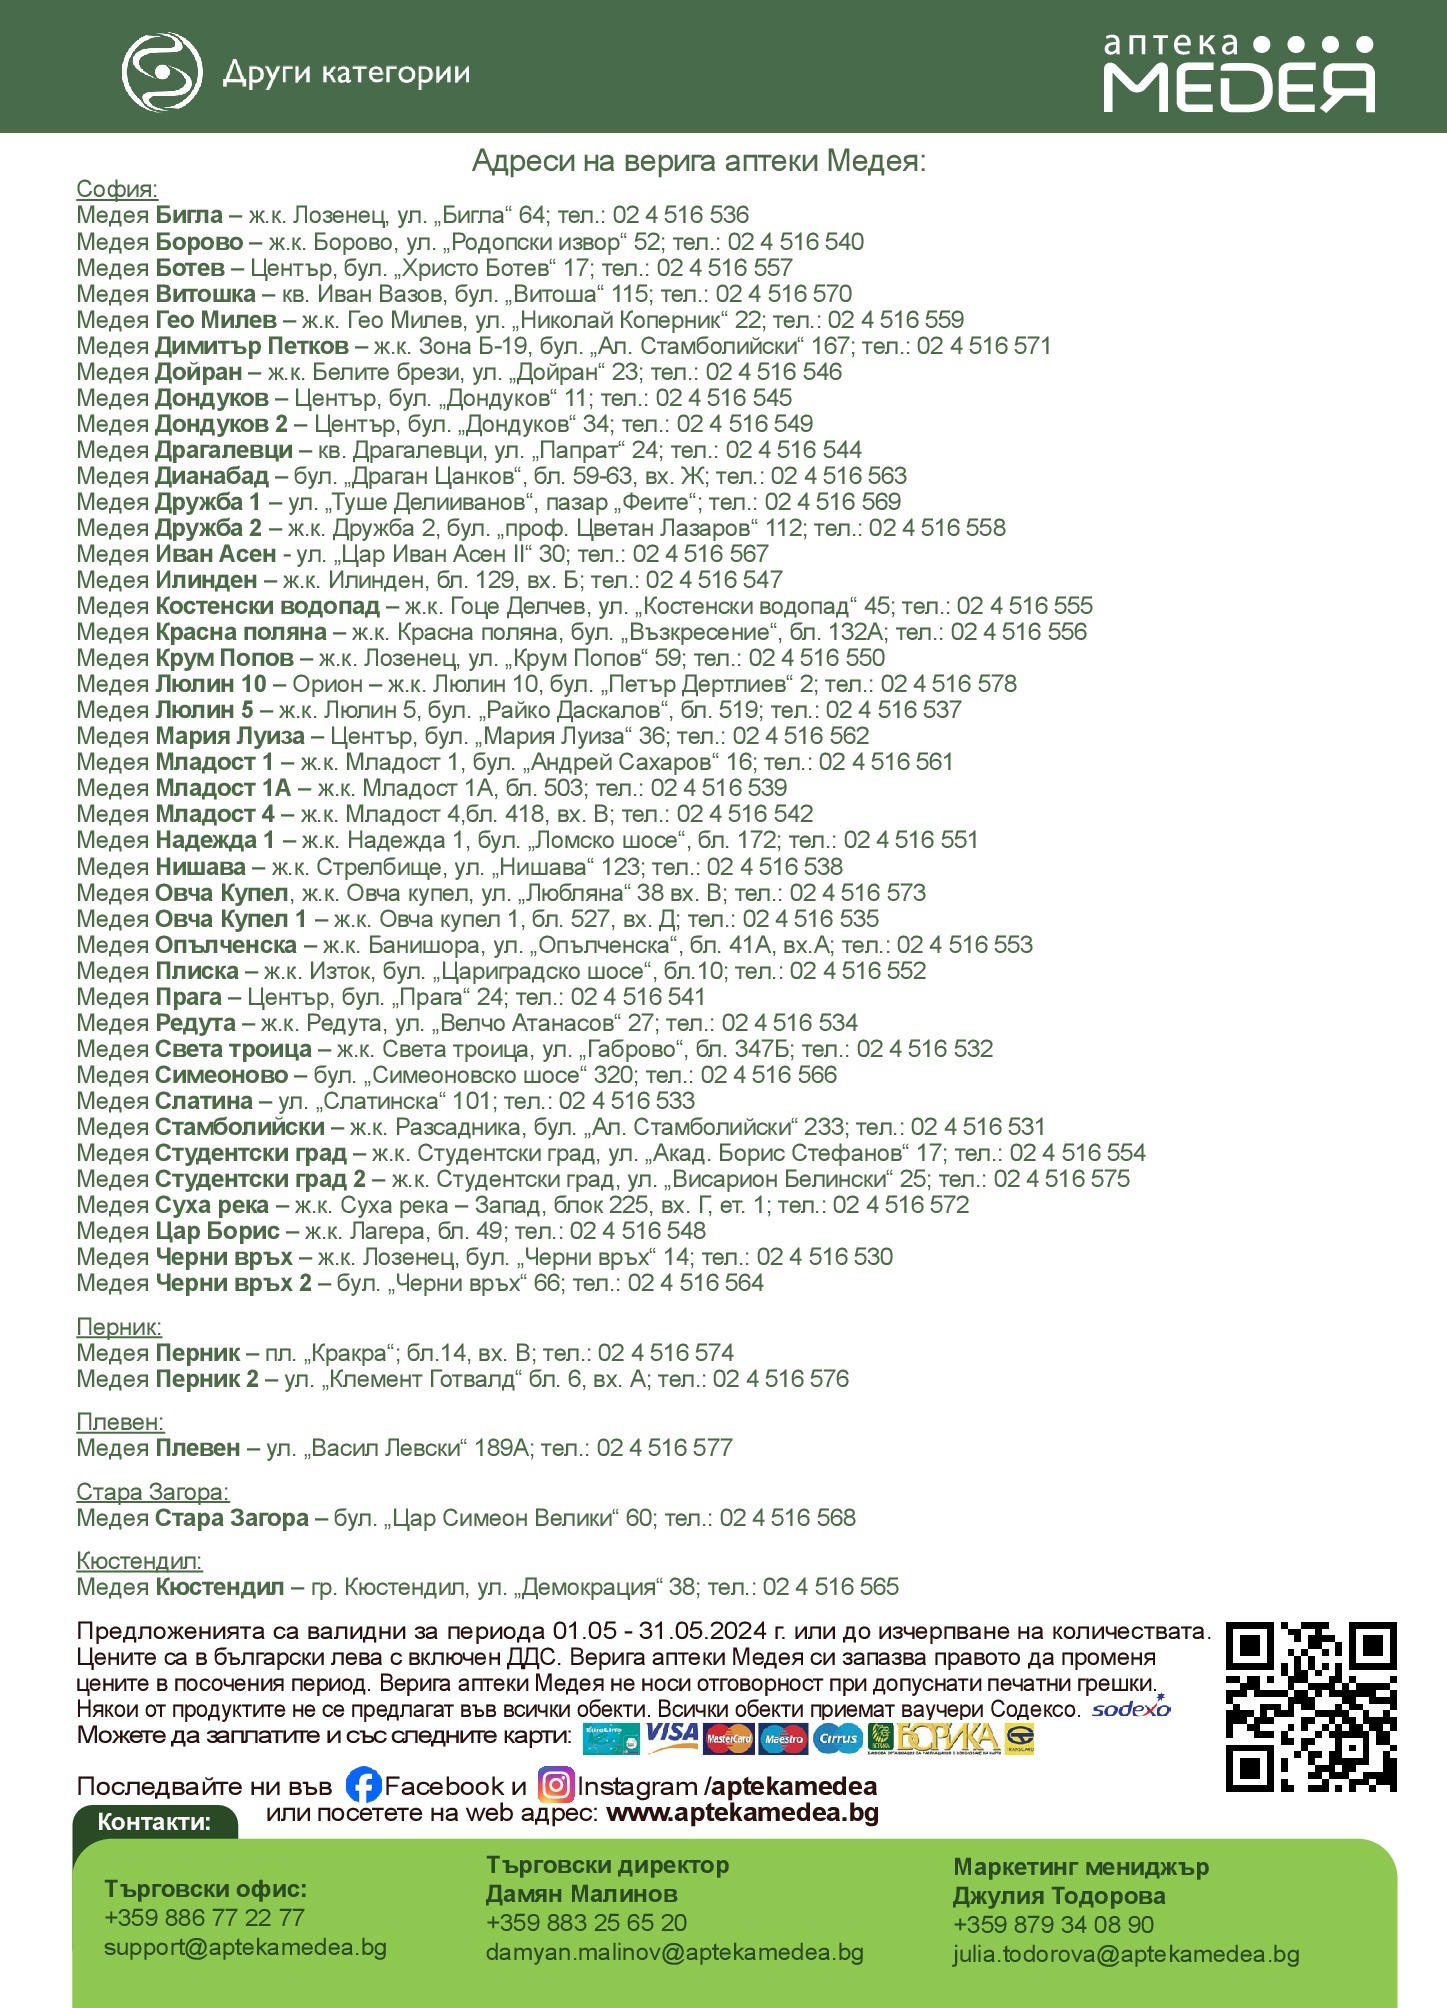 Аптеки Медея брошура - Майски оферти валидна от: 01.05.2024 - 31.05.2024 - онлайн брошура | Страница: 35 | Продукти: Офис